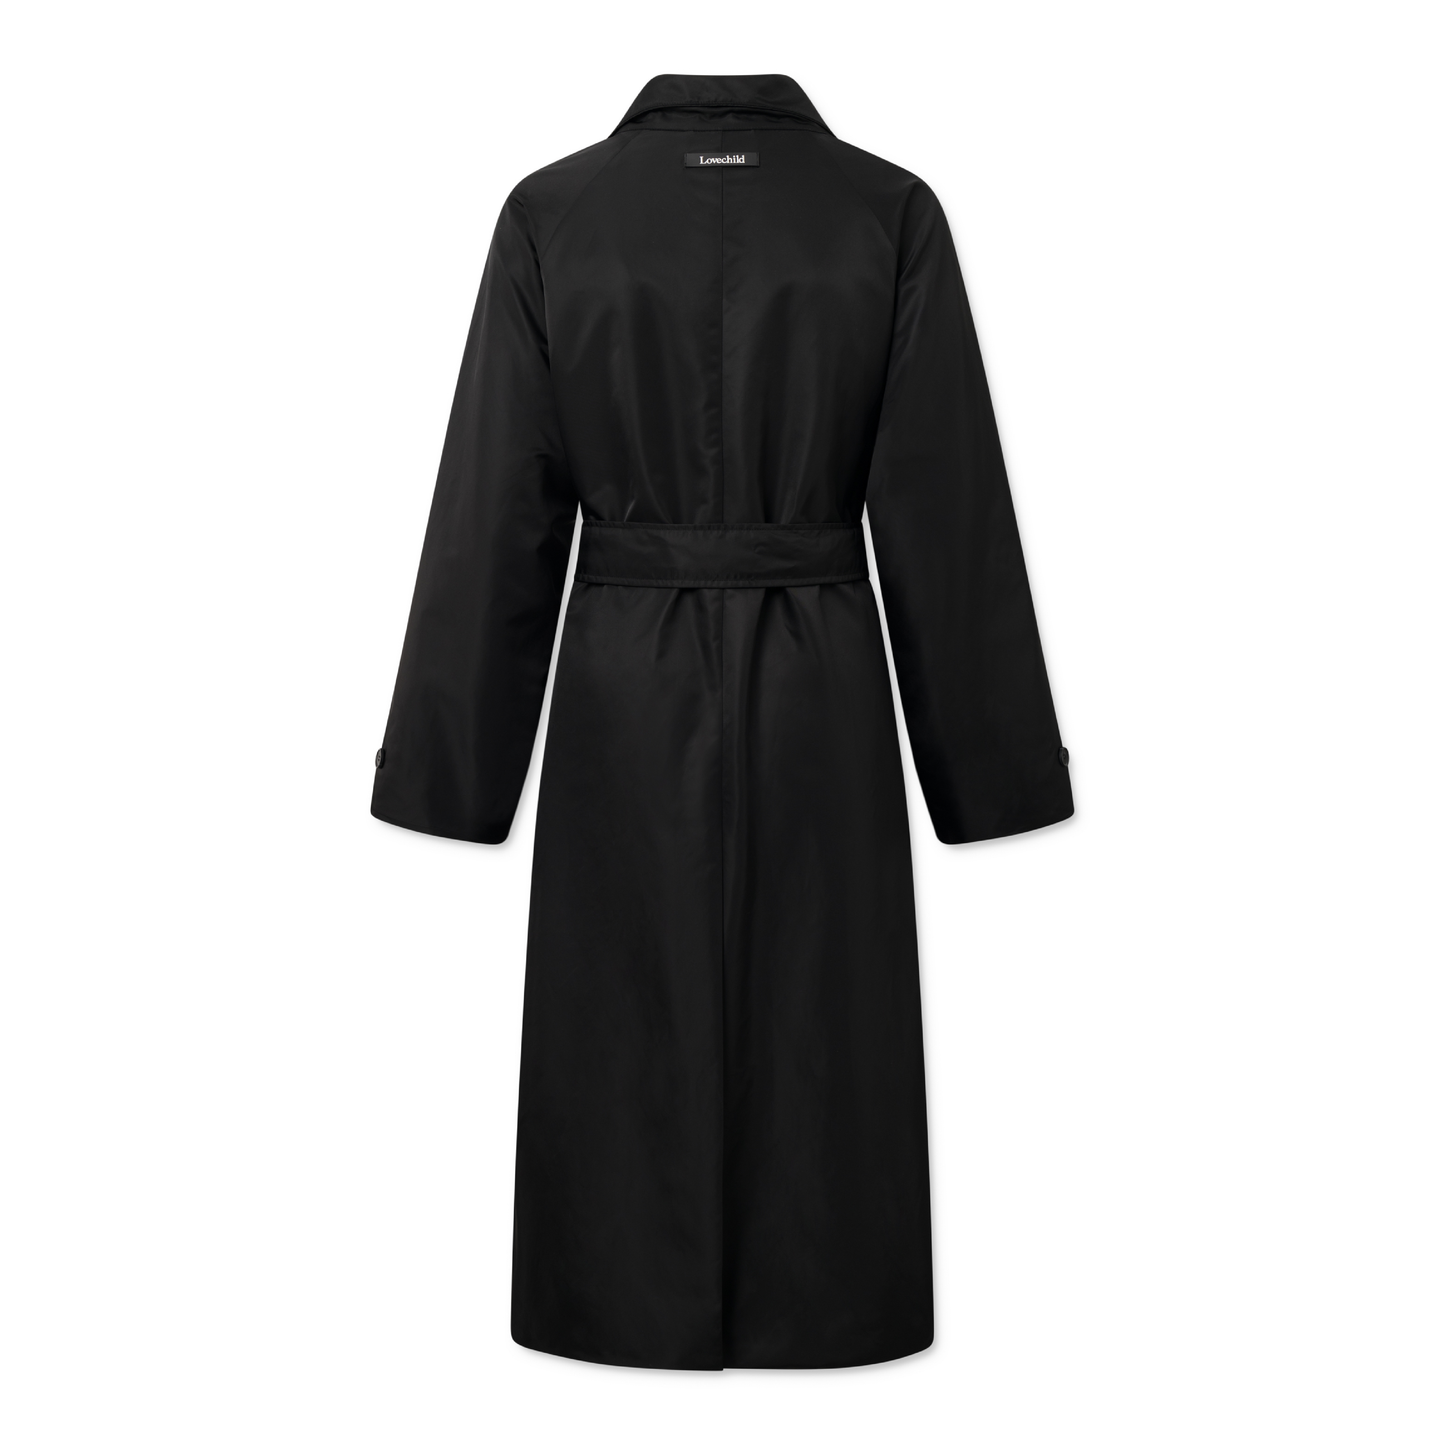 Kimora Coat, Black